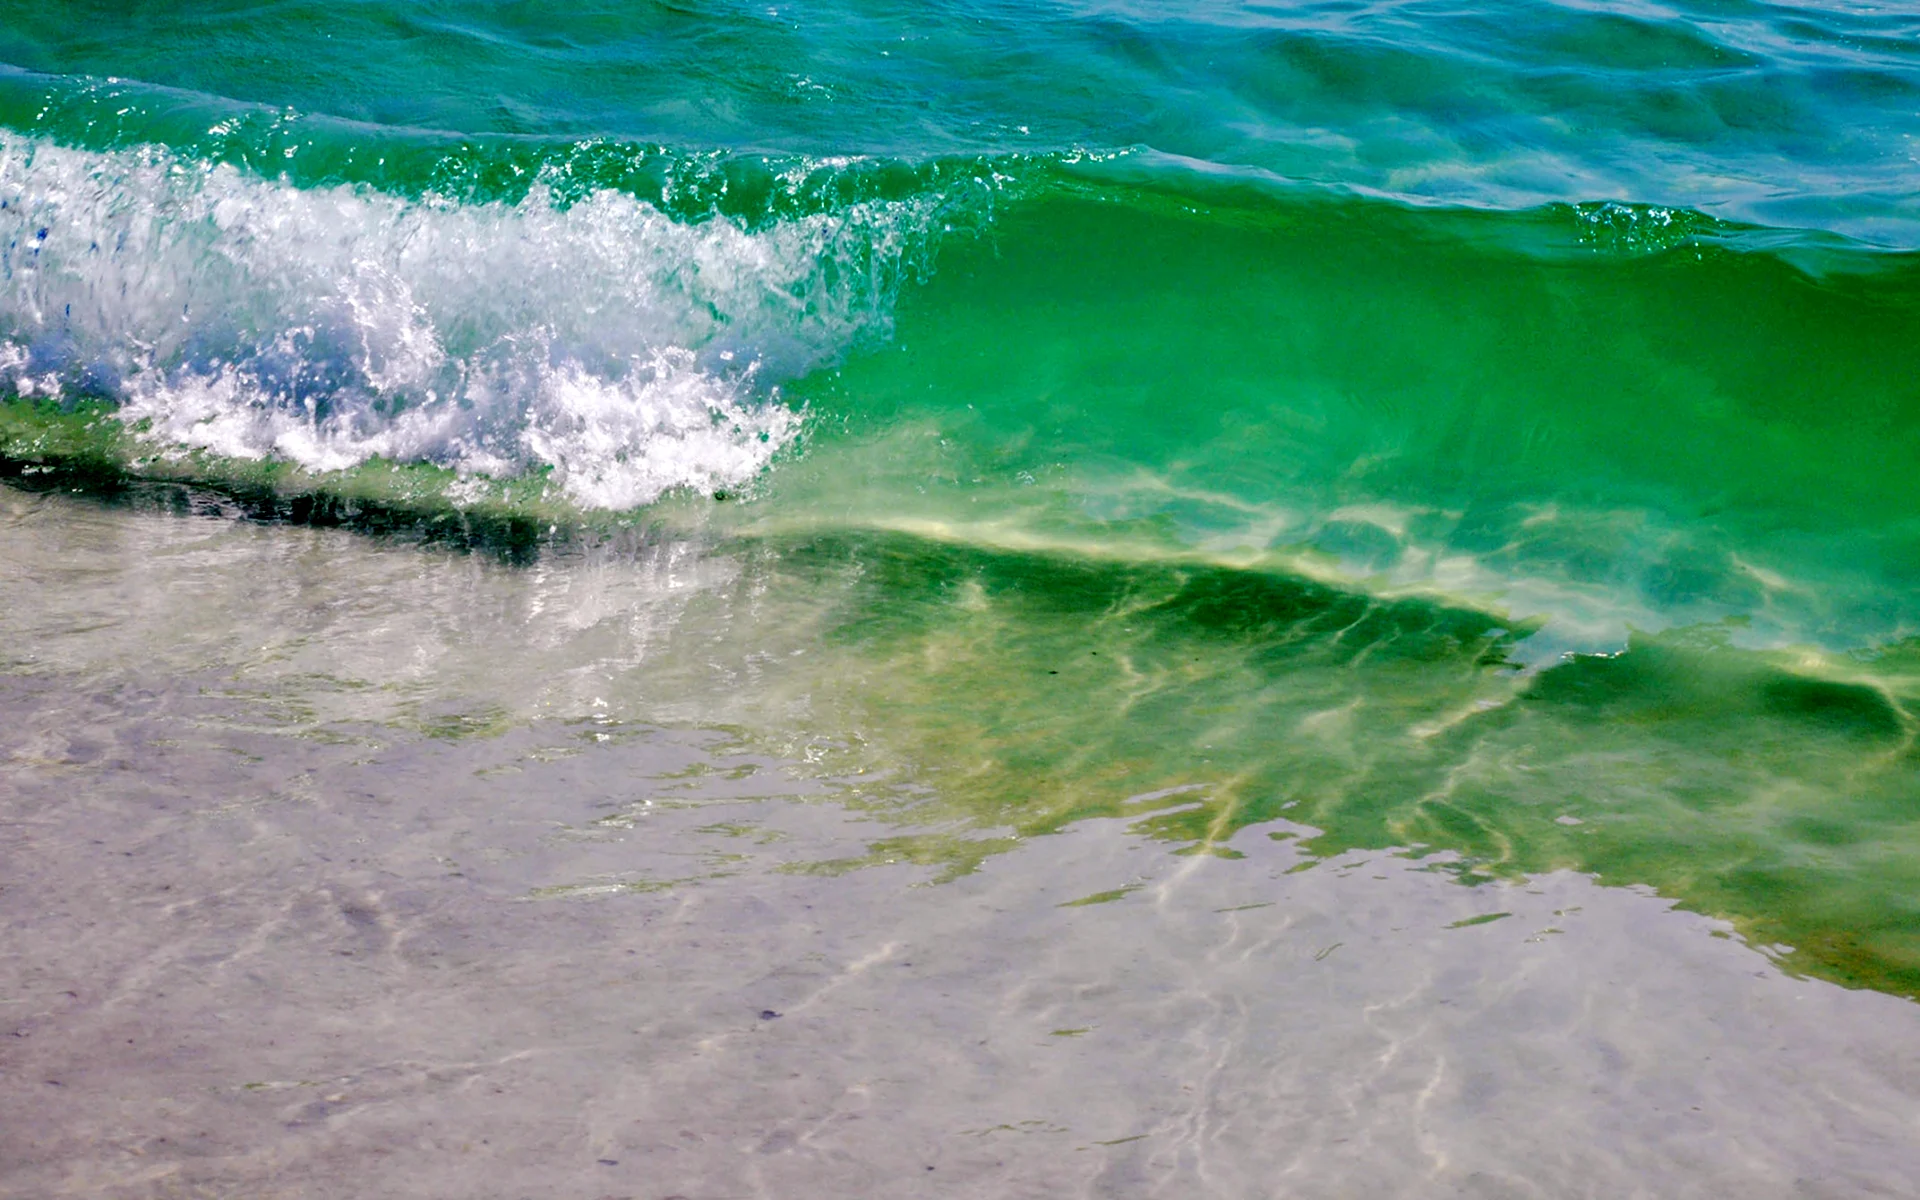 Море бирюзового цвета